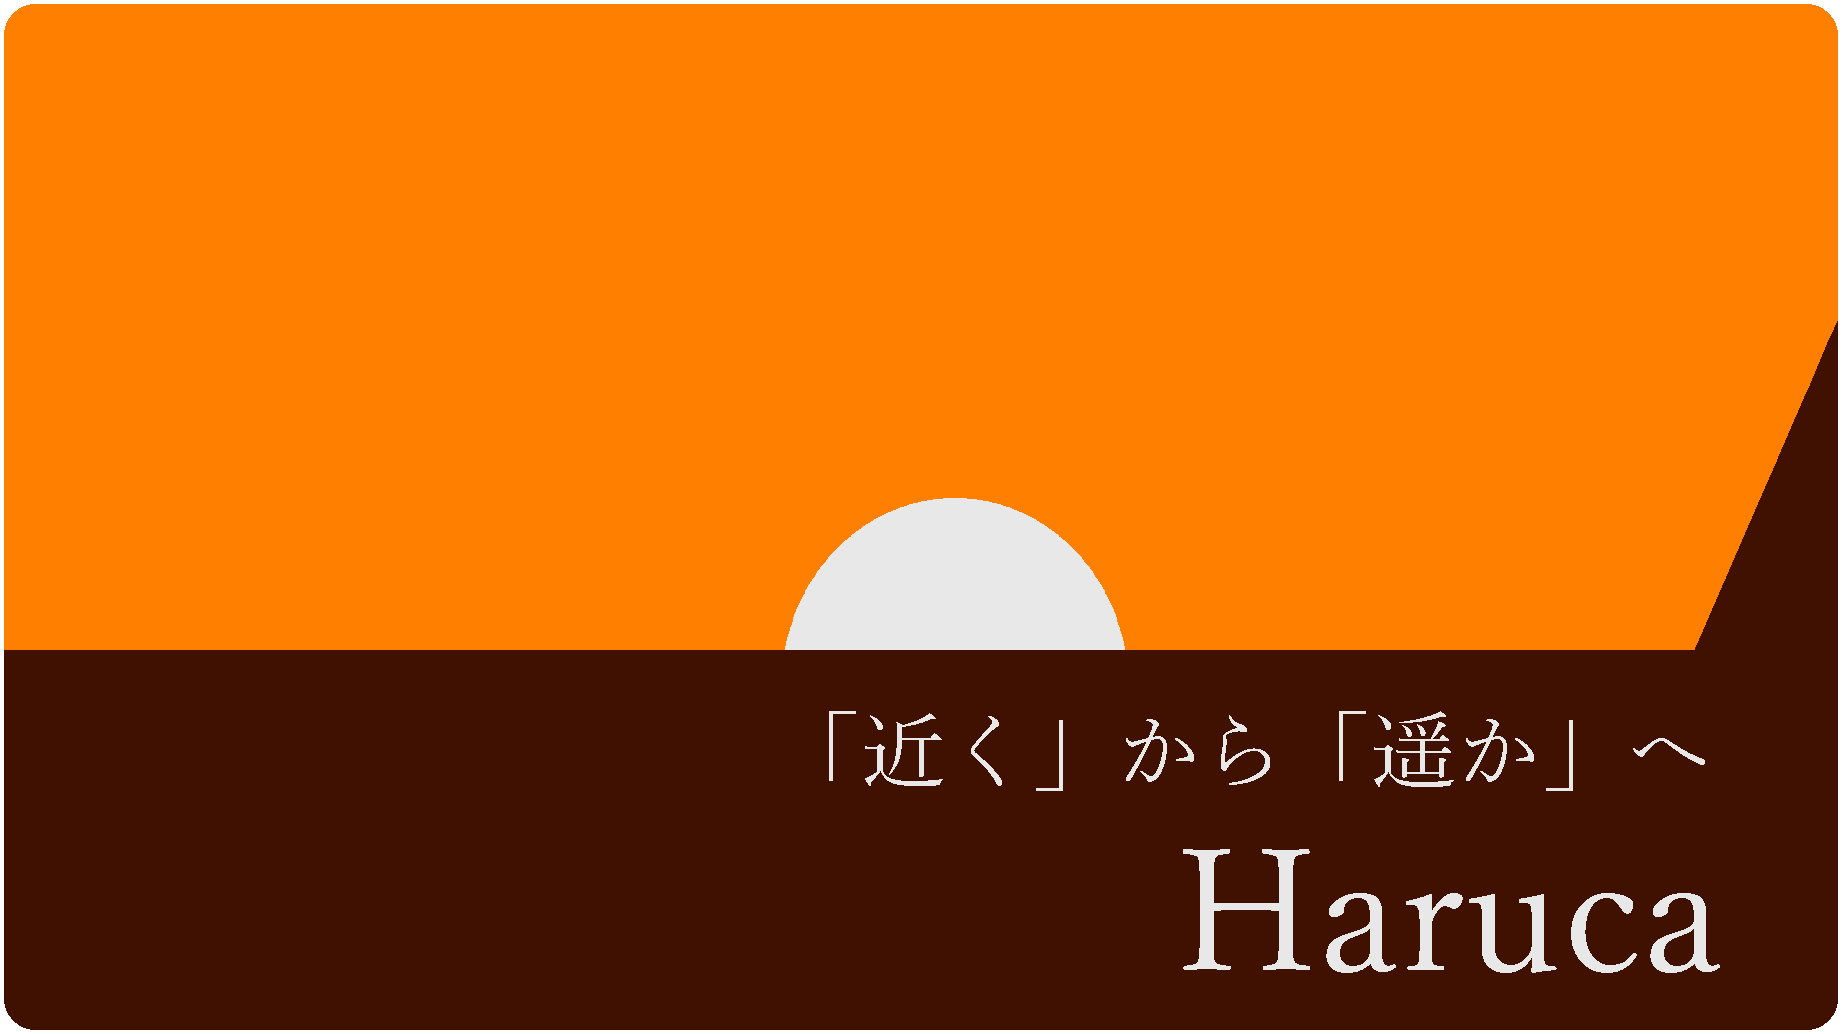 HARUCA_0.png